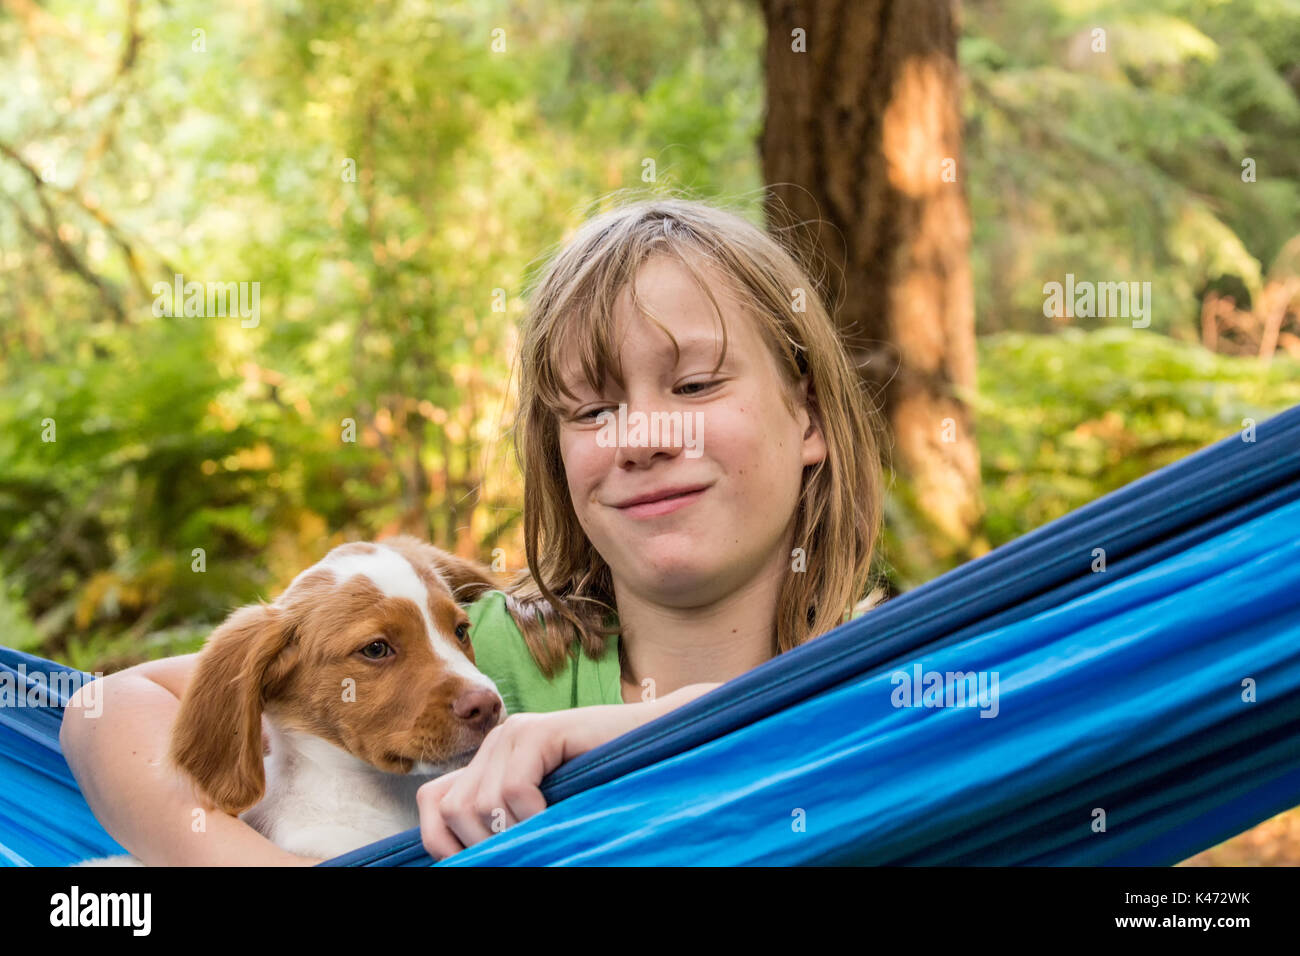 Dieci anni di vecchia ragazza guardando i suoi due mese vecchio Epagneul Breton "Archie" che è appoggiato in una amaca, Issaquah, Washington, Stati Uniti d'America Foto Stock